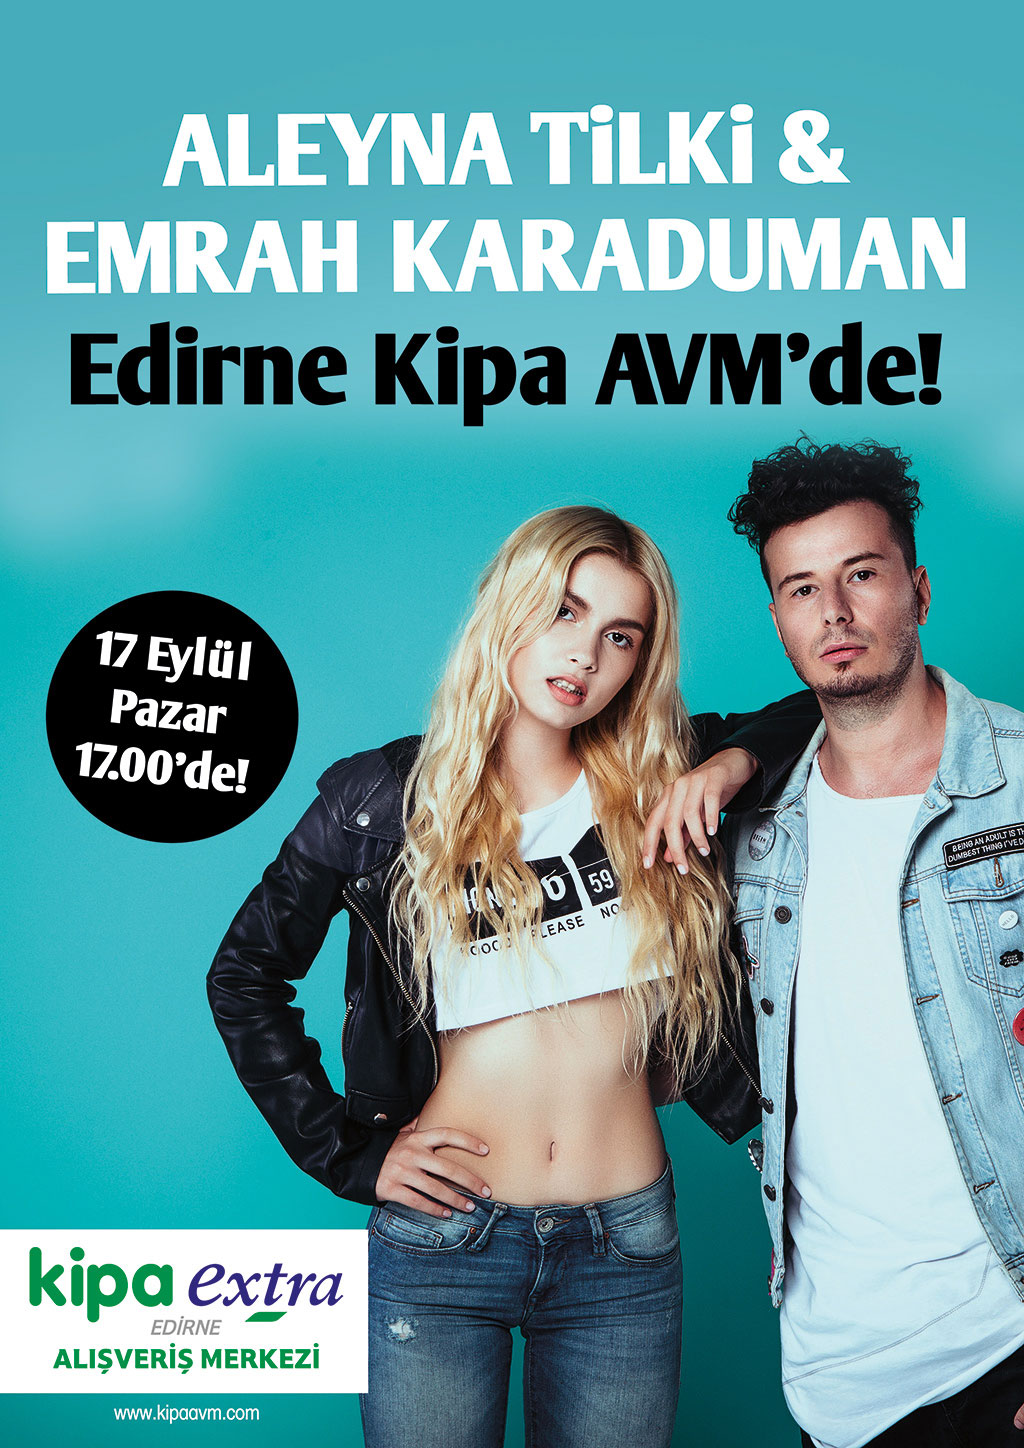 Aleyna Tilki & Emrah Karaduman Edirne Kipa AVM'de